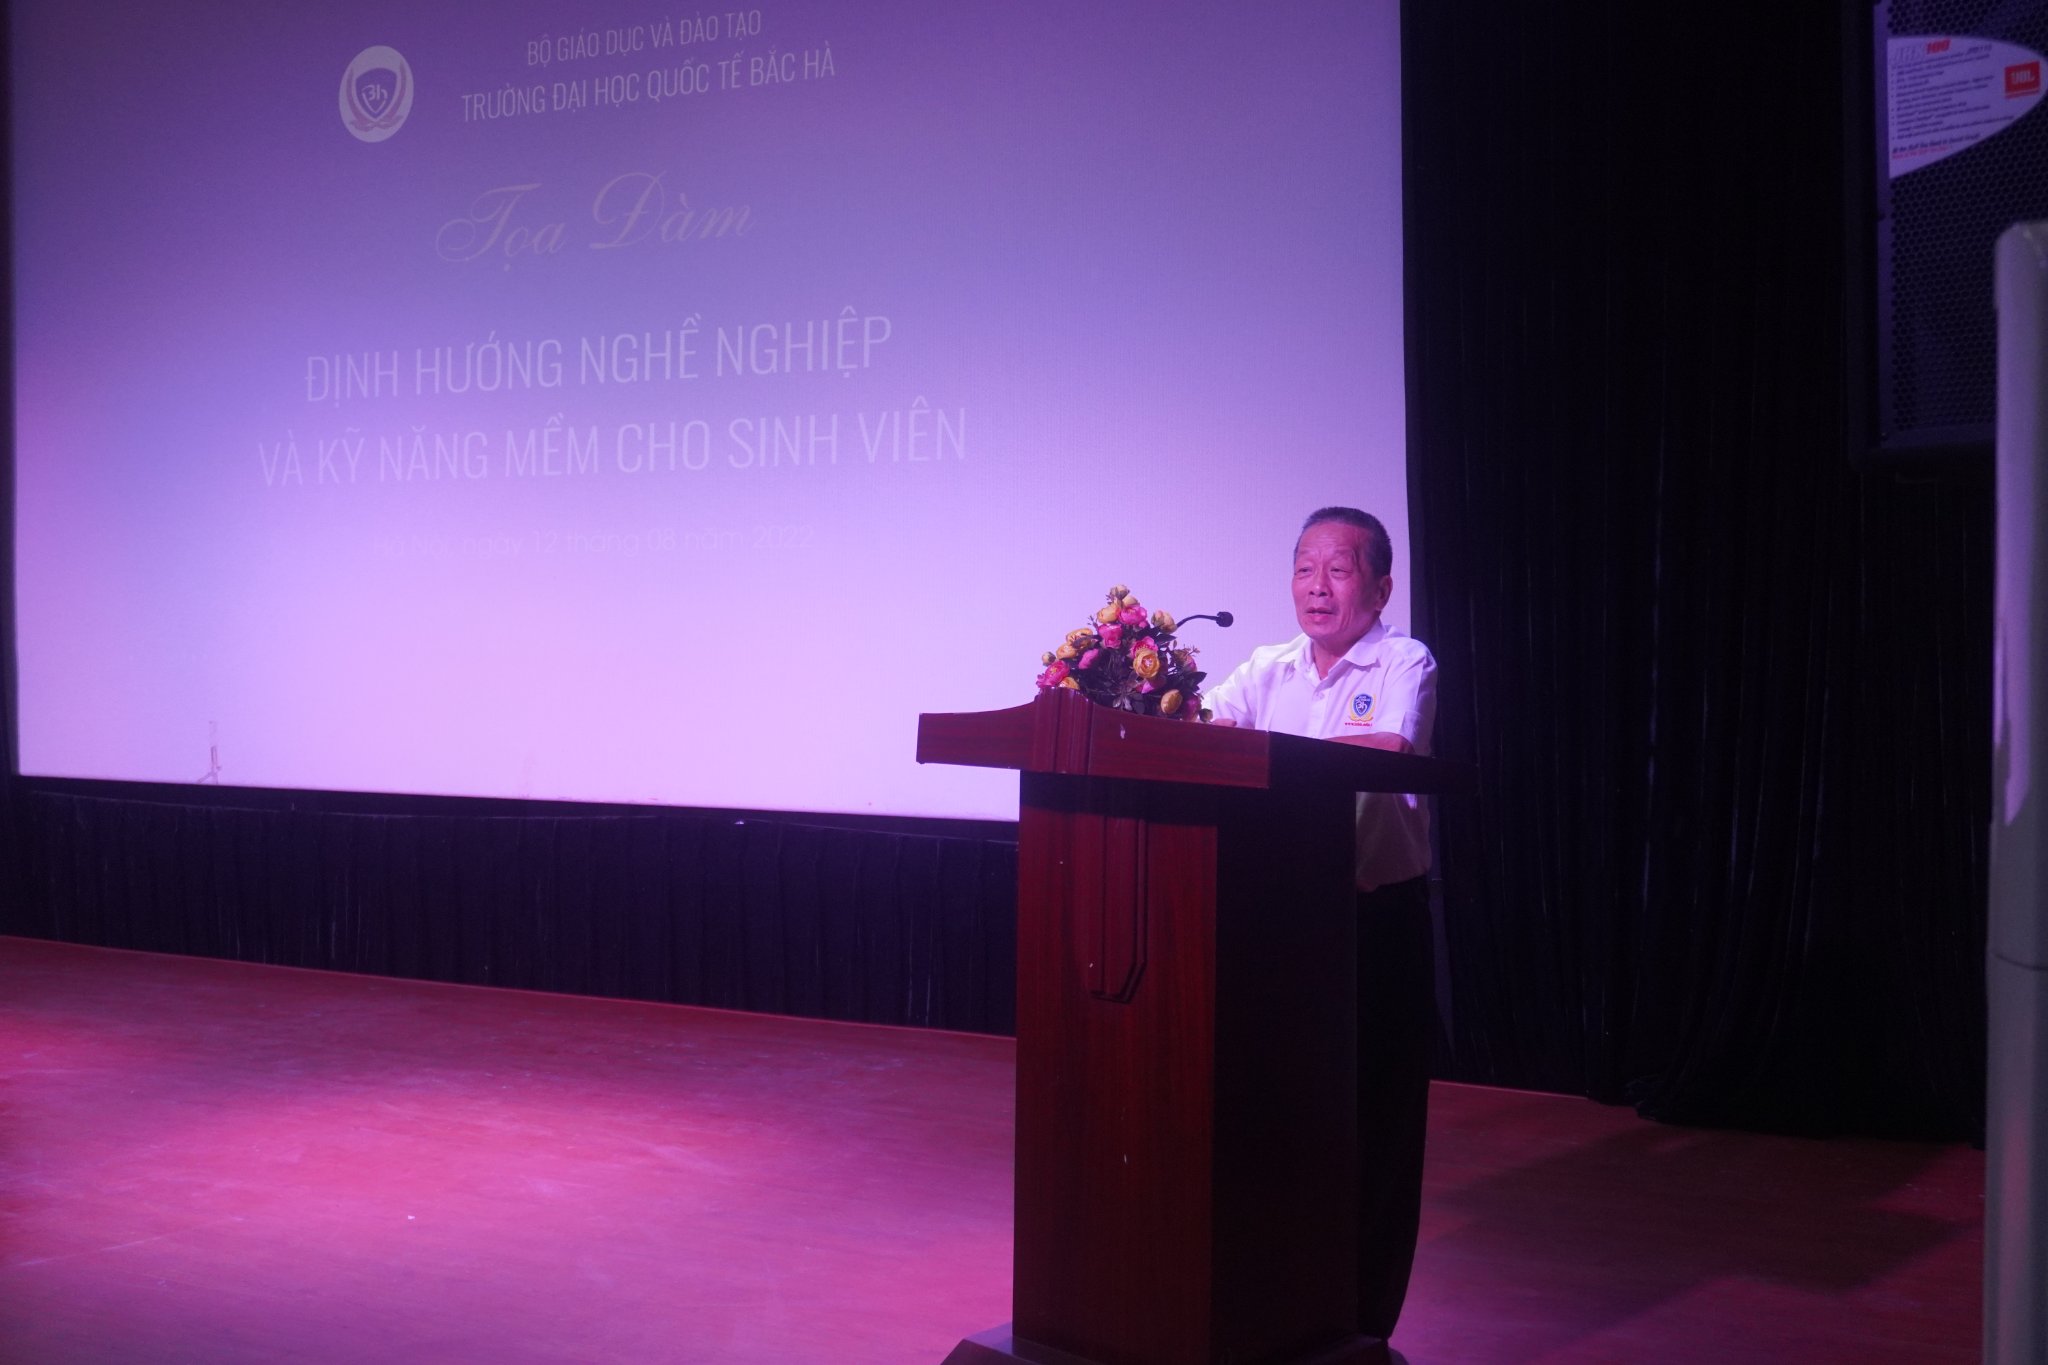 PGS. TS Nguyễn Quốc Trung – Hiệu trưởng trường Đại học Quốc tế Bắc Hà phát biểu trong buổi tọa đàm